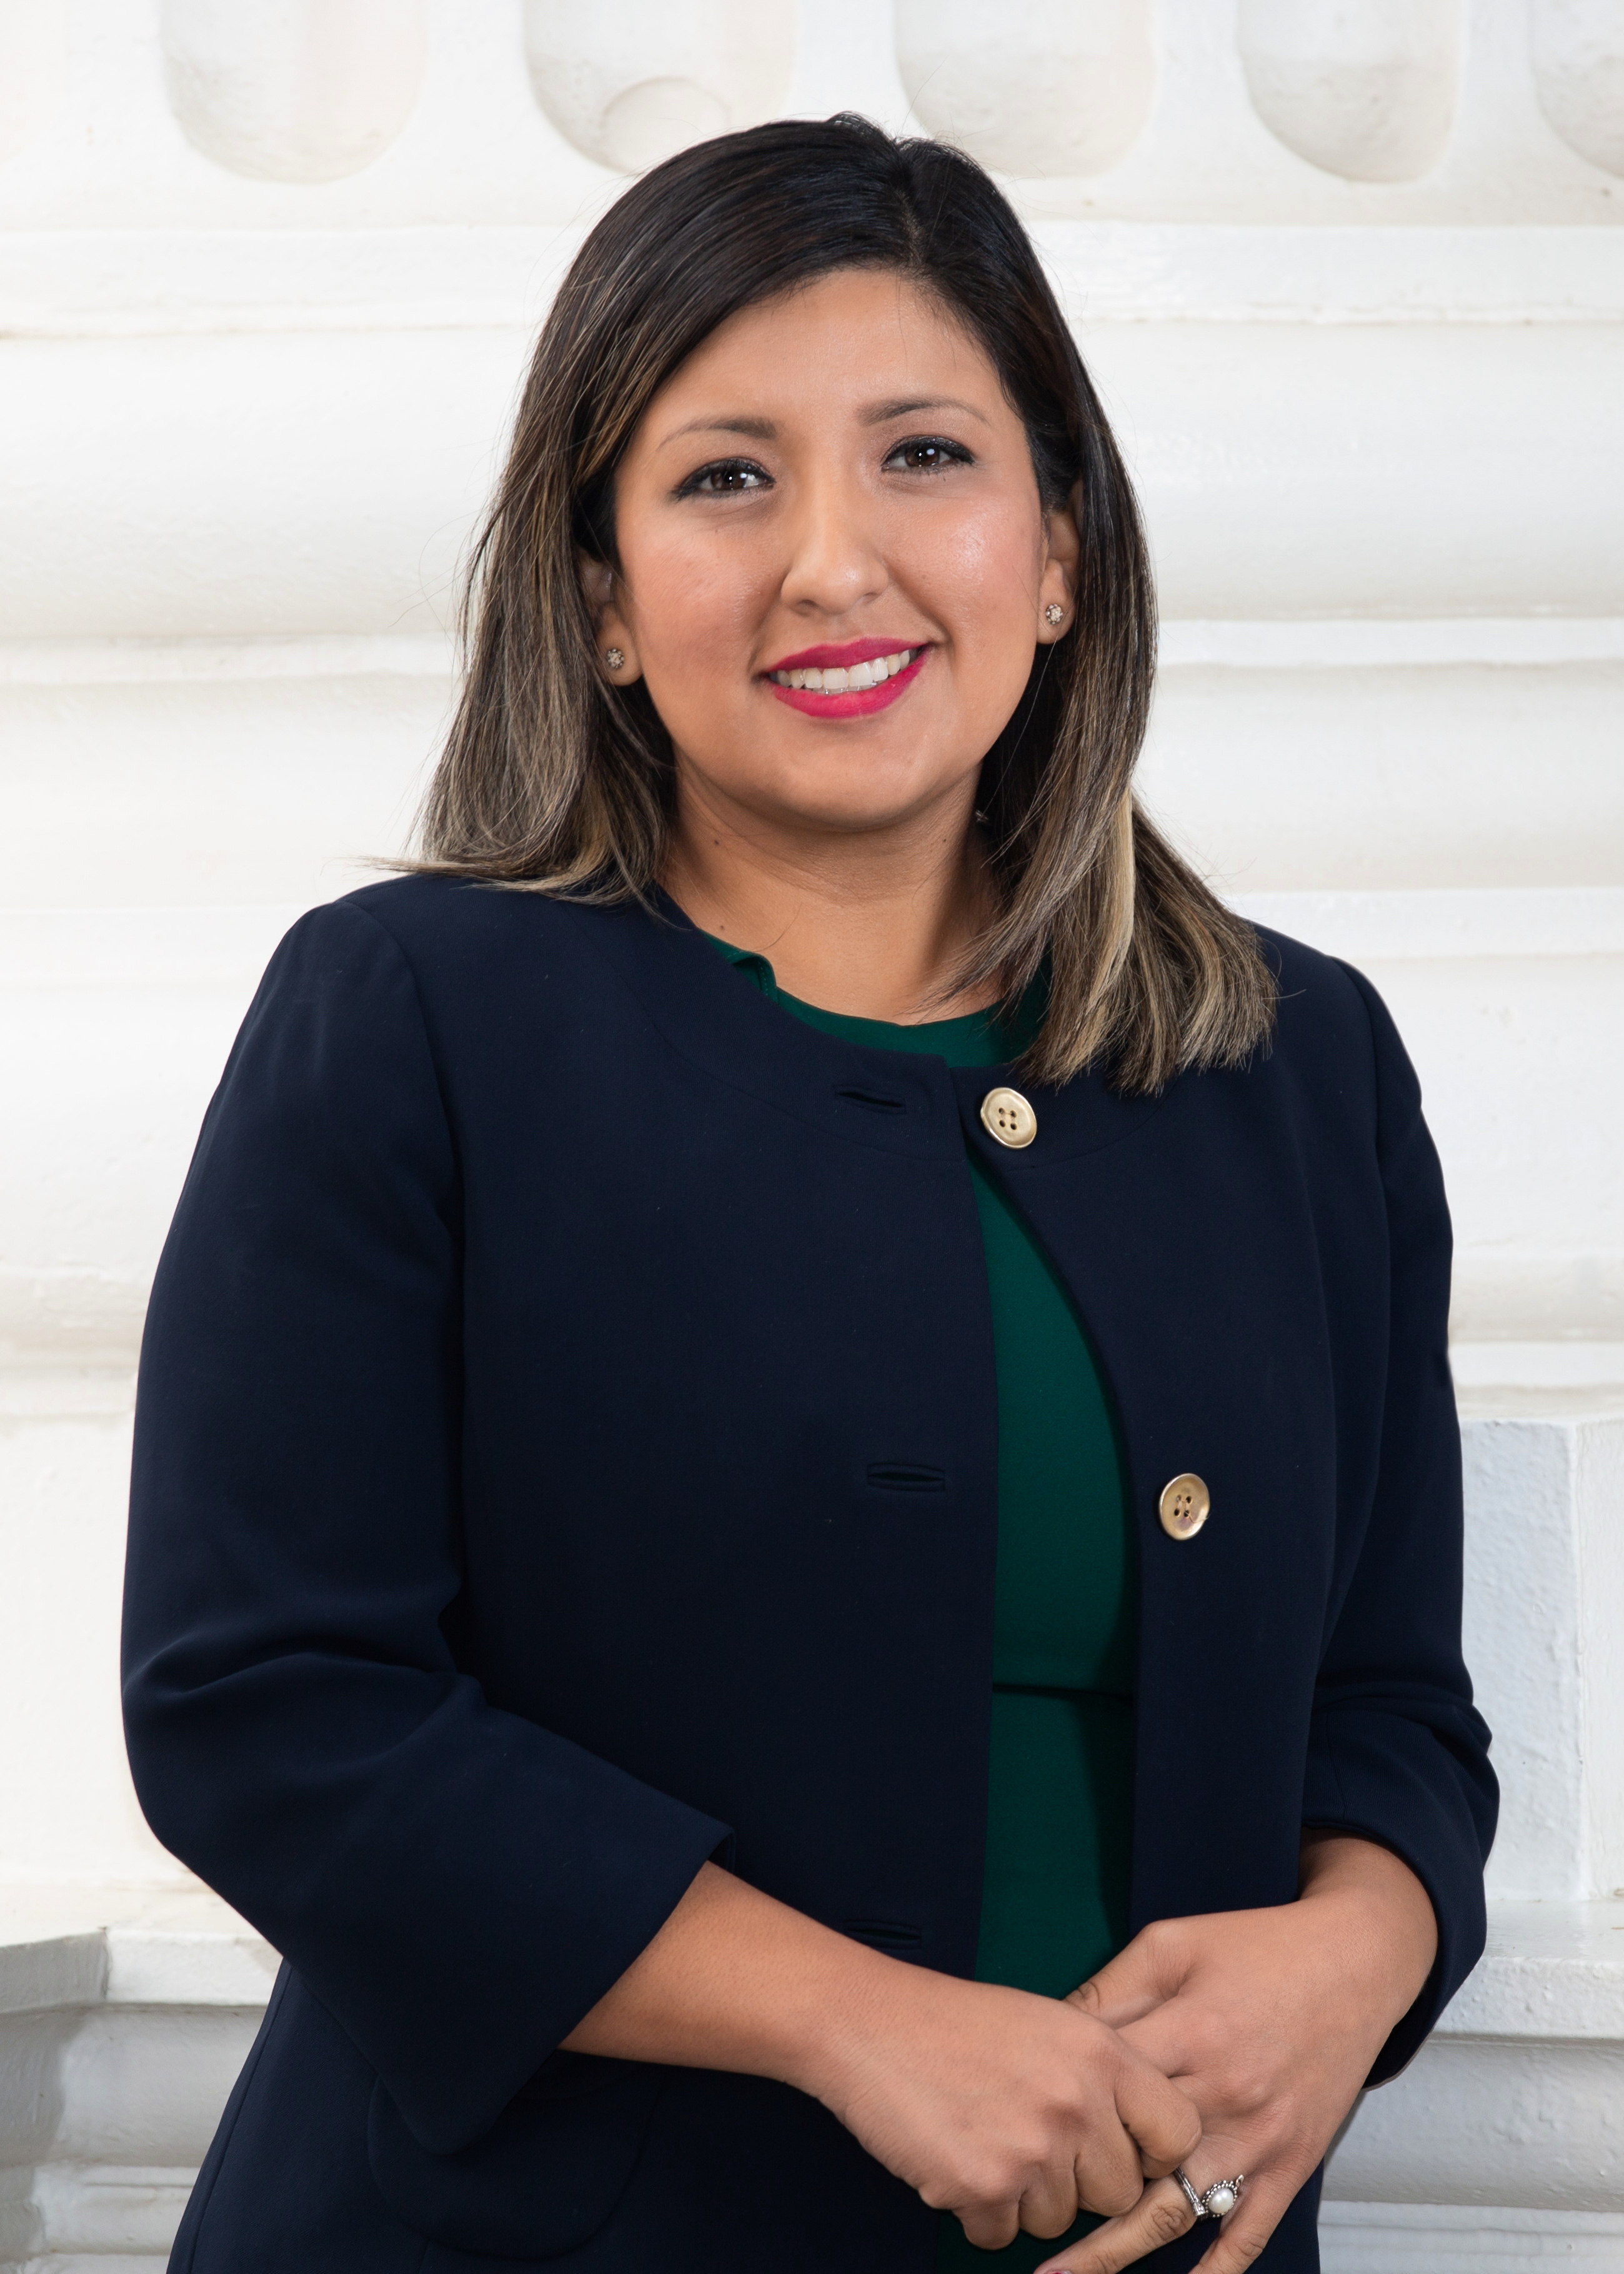 Senator Melissa Hurtado